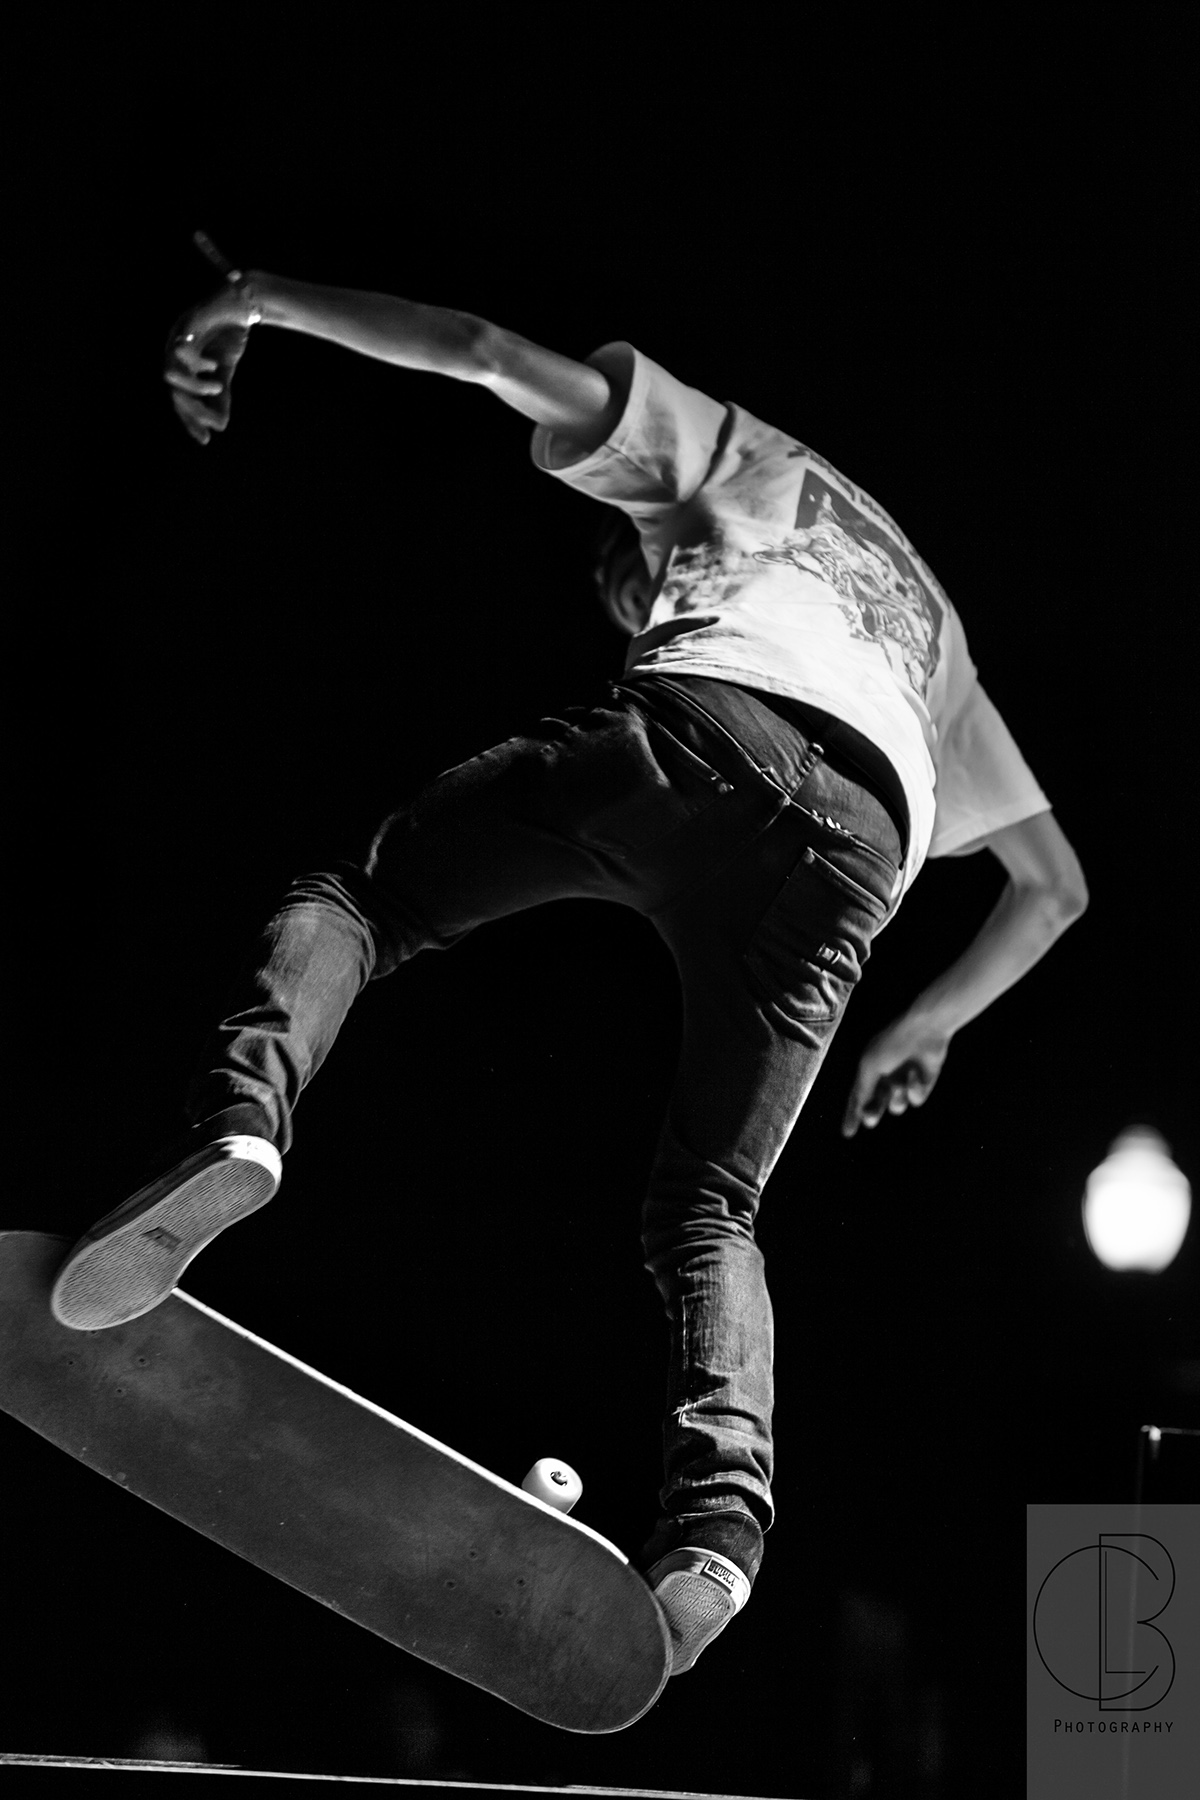 black and white Red Bull skateboarding event photography action photography sports photography